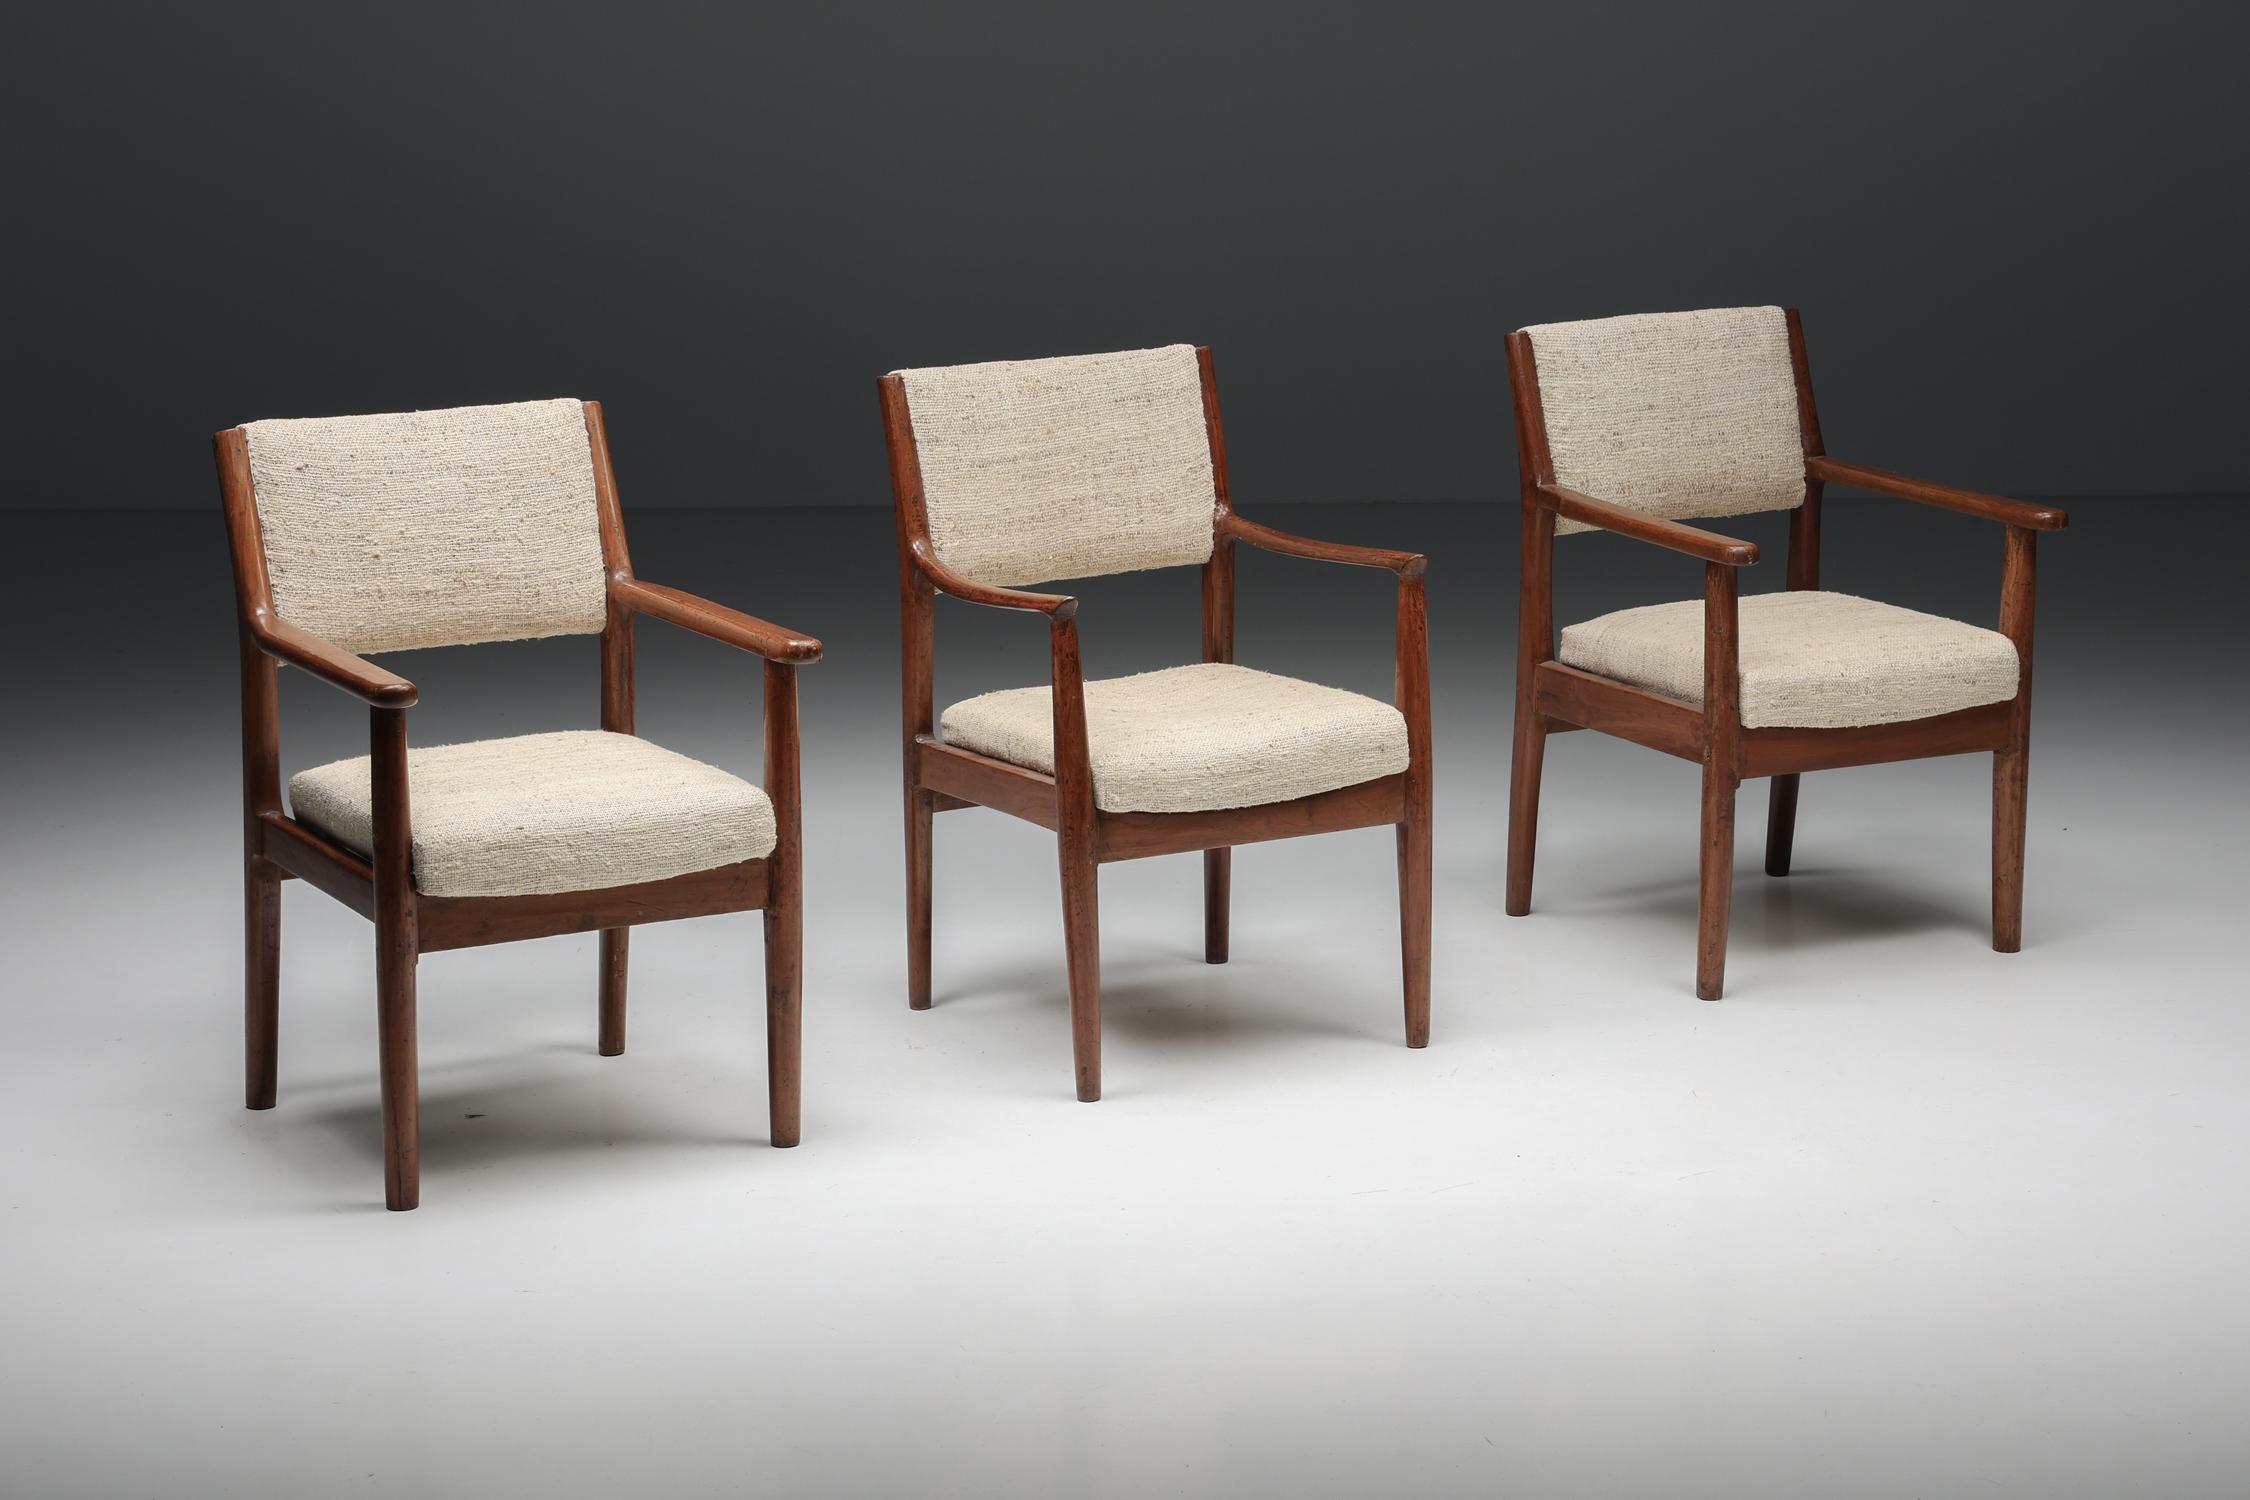 Pierre Jeanneret Chandigarh PSA-CC°315/166 Sessel, Chandigarh, Indien, 1952-1965

Diese Sessel von Pierre Jeanneret wurden für die Stadt Chandigarh in Indien entworfen, eine utopische Stadt, die von seinem Cousin Le Corbusier entworfen wurde.